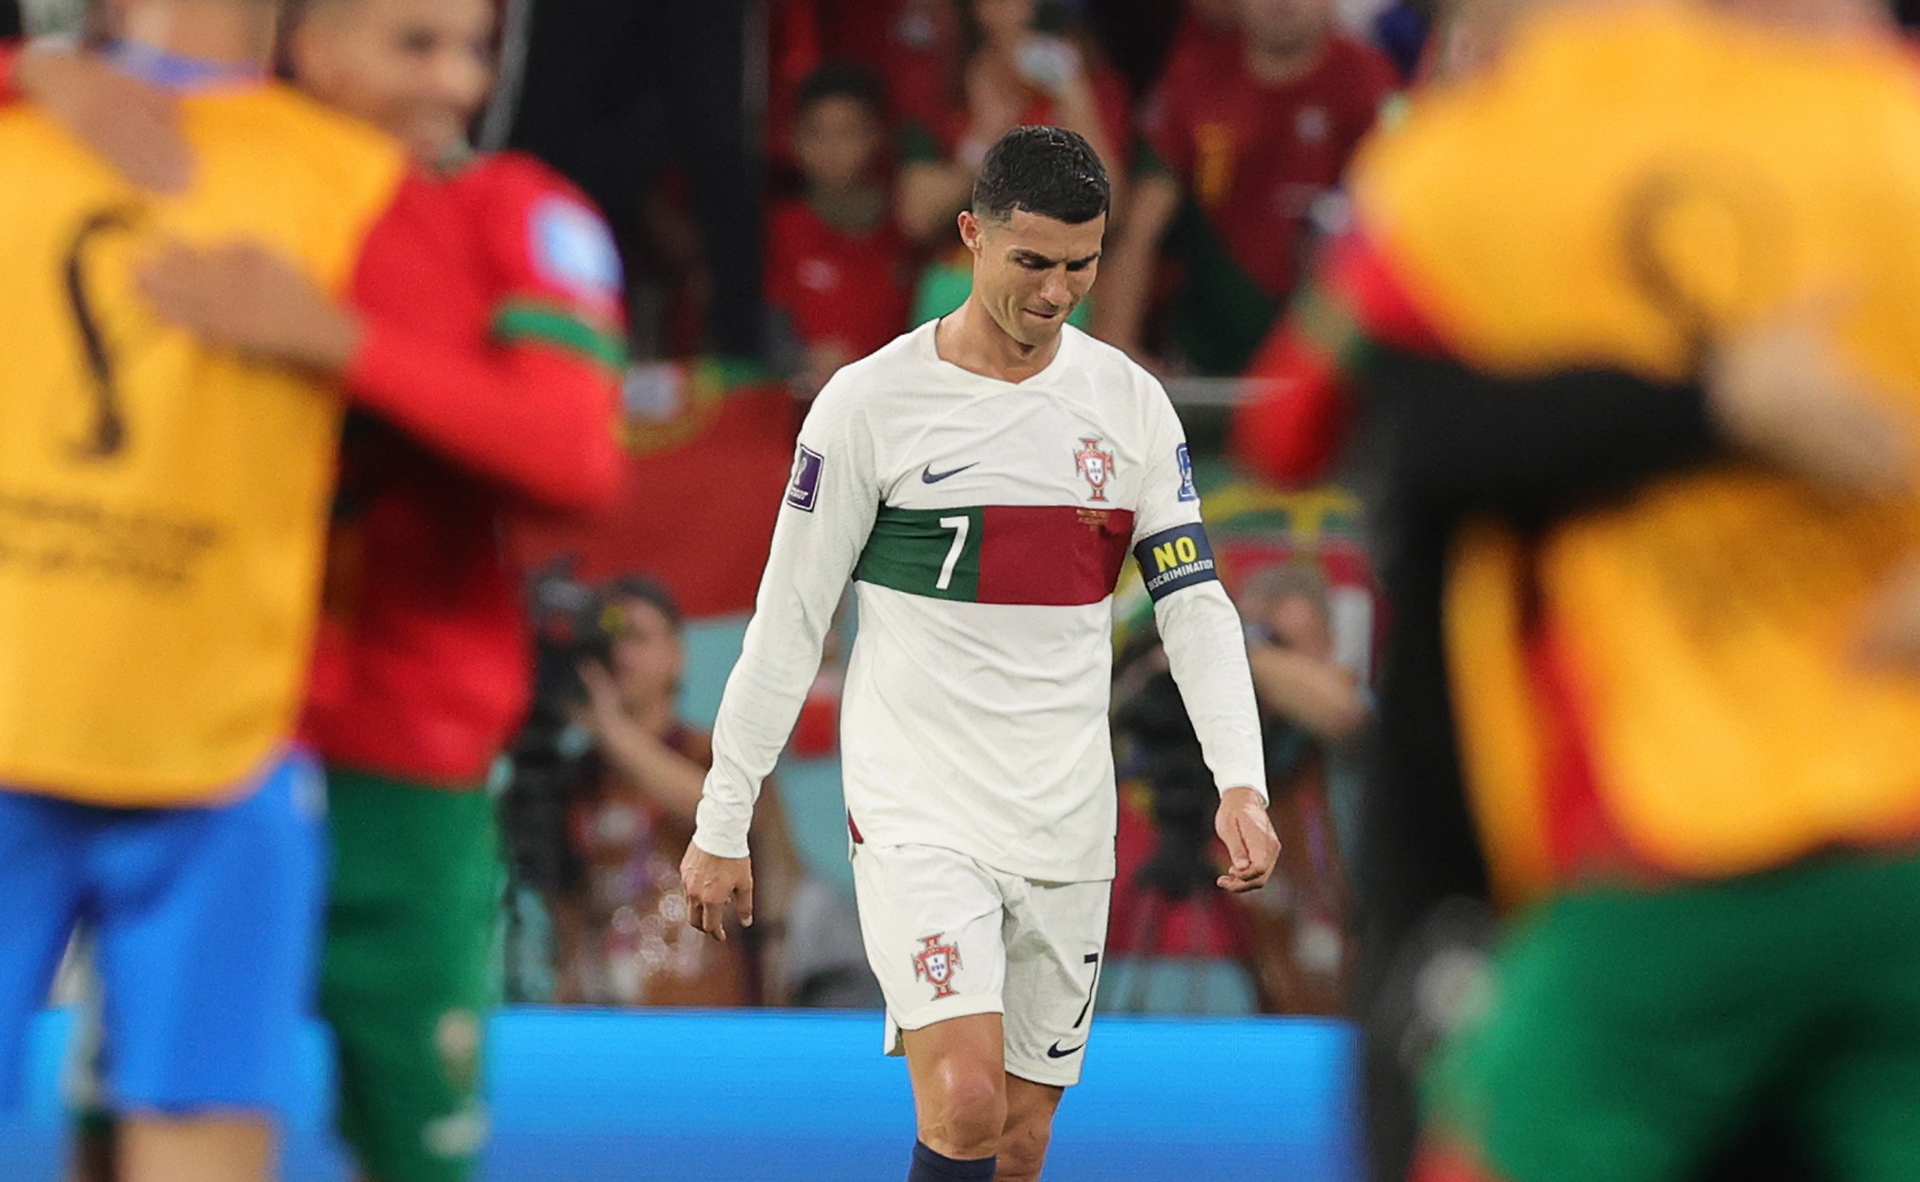 Nunca di la espalda a luchar: Cristiano Ronaldo tras eliminación de Portugal